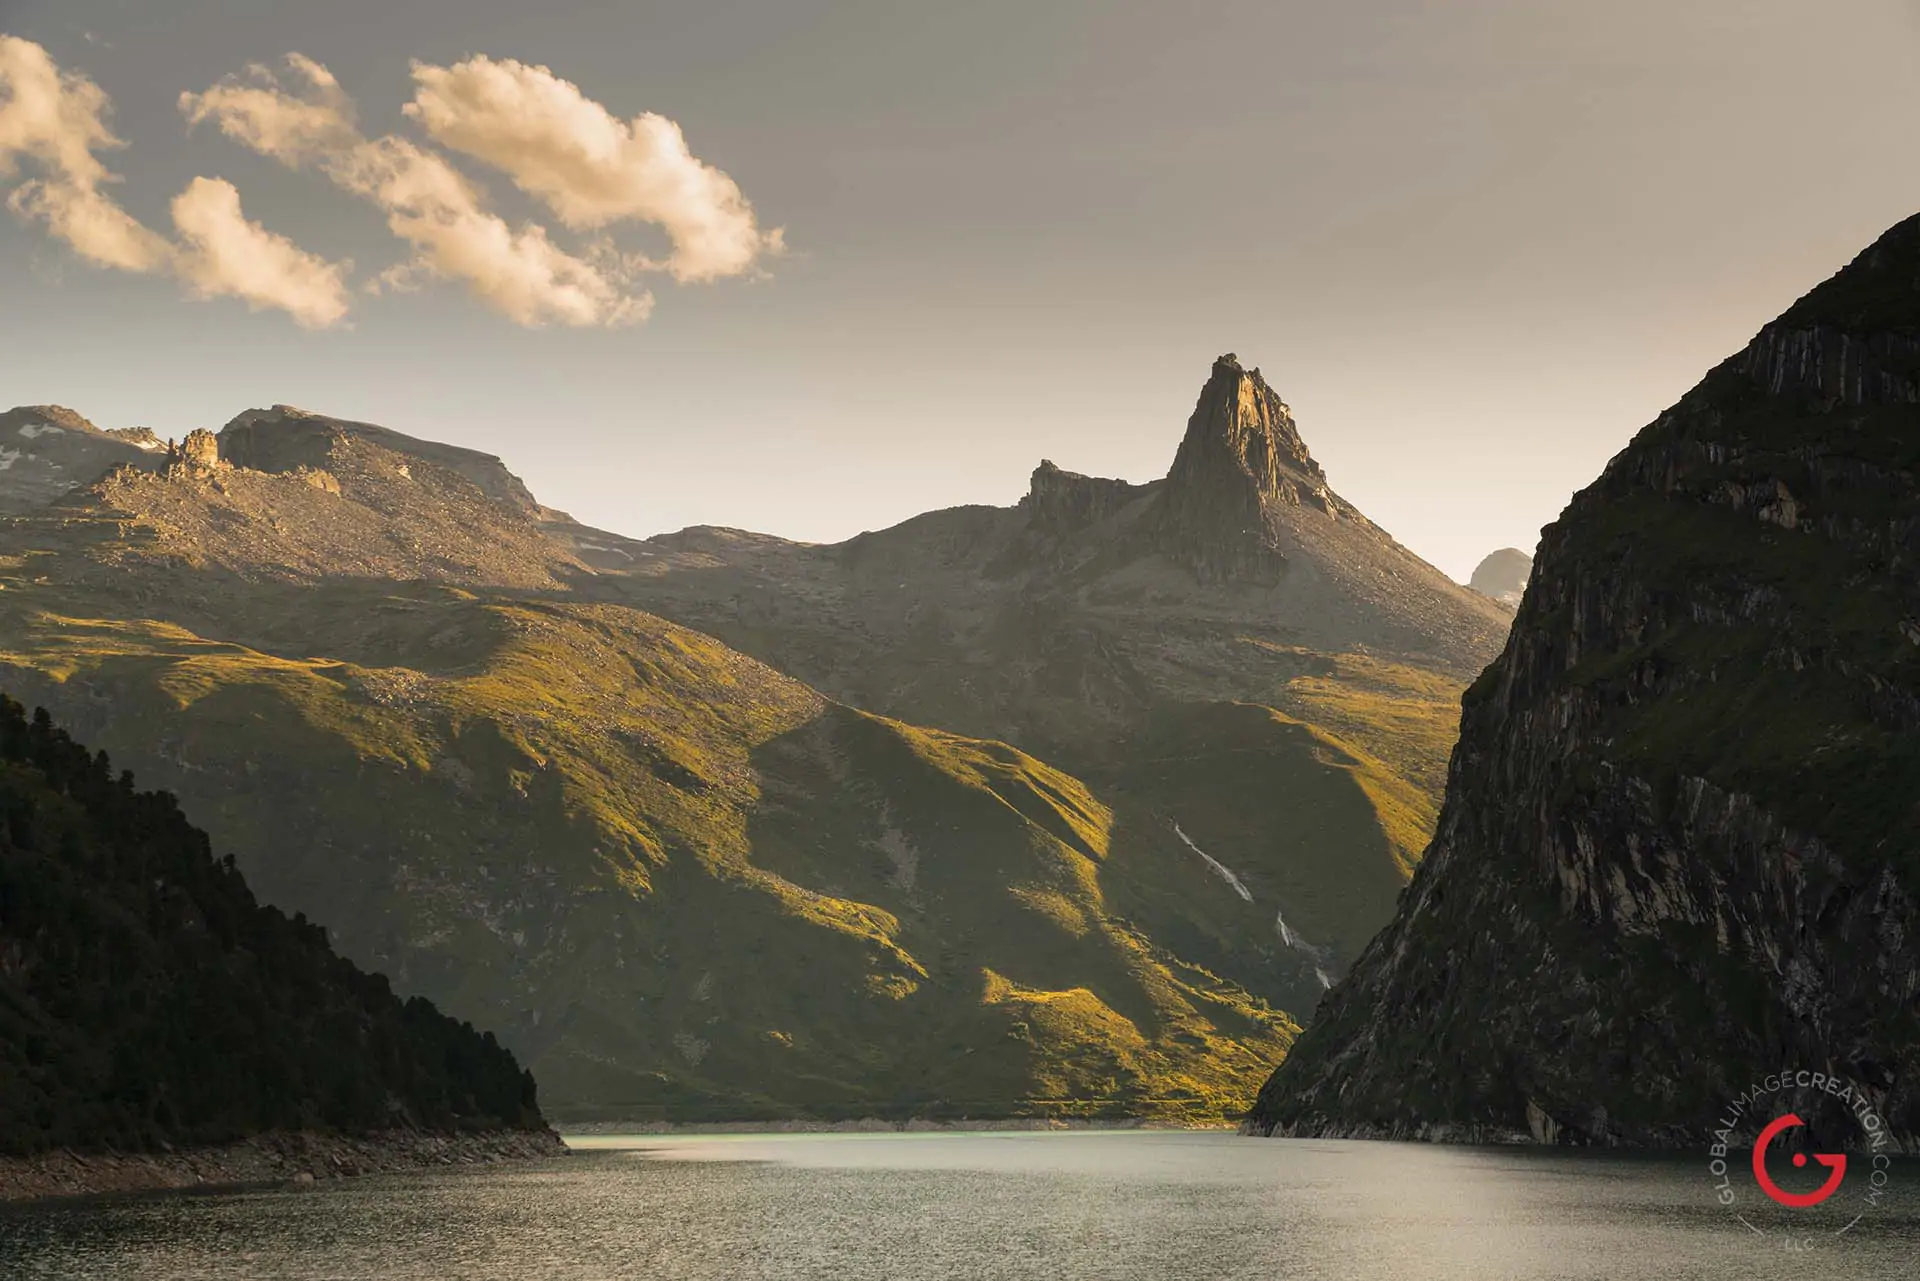 Zervreilasee at Late Day near Vals, Switzerland - Travel Photographer and Switzerland Photography